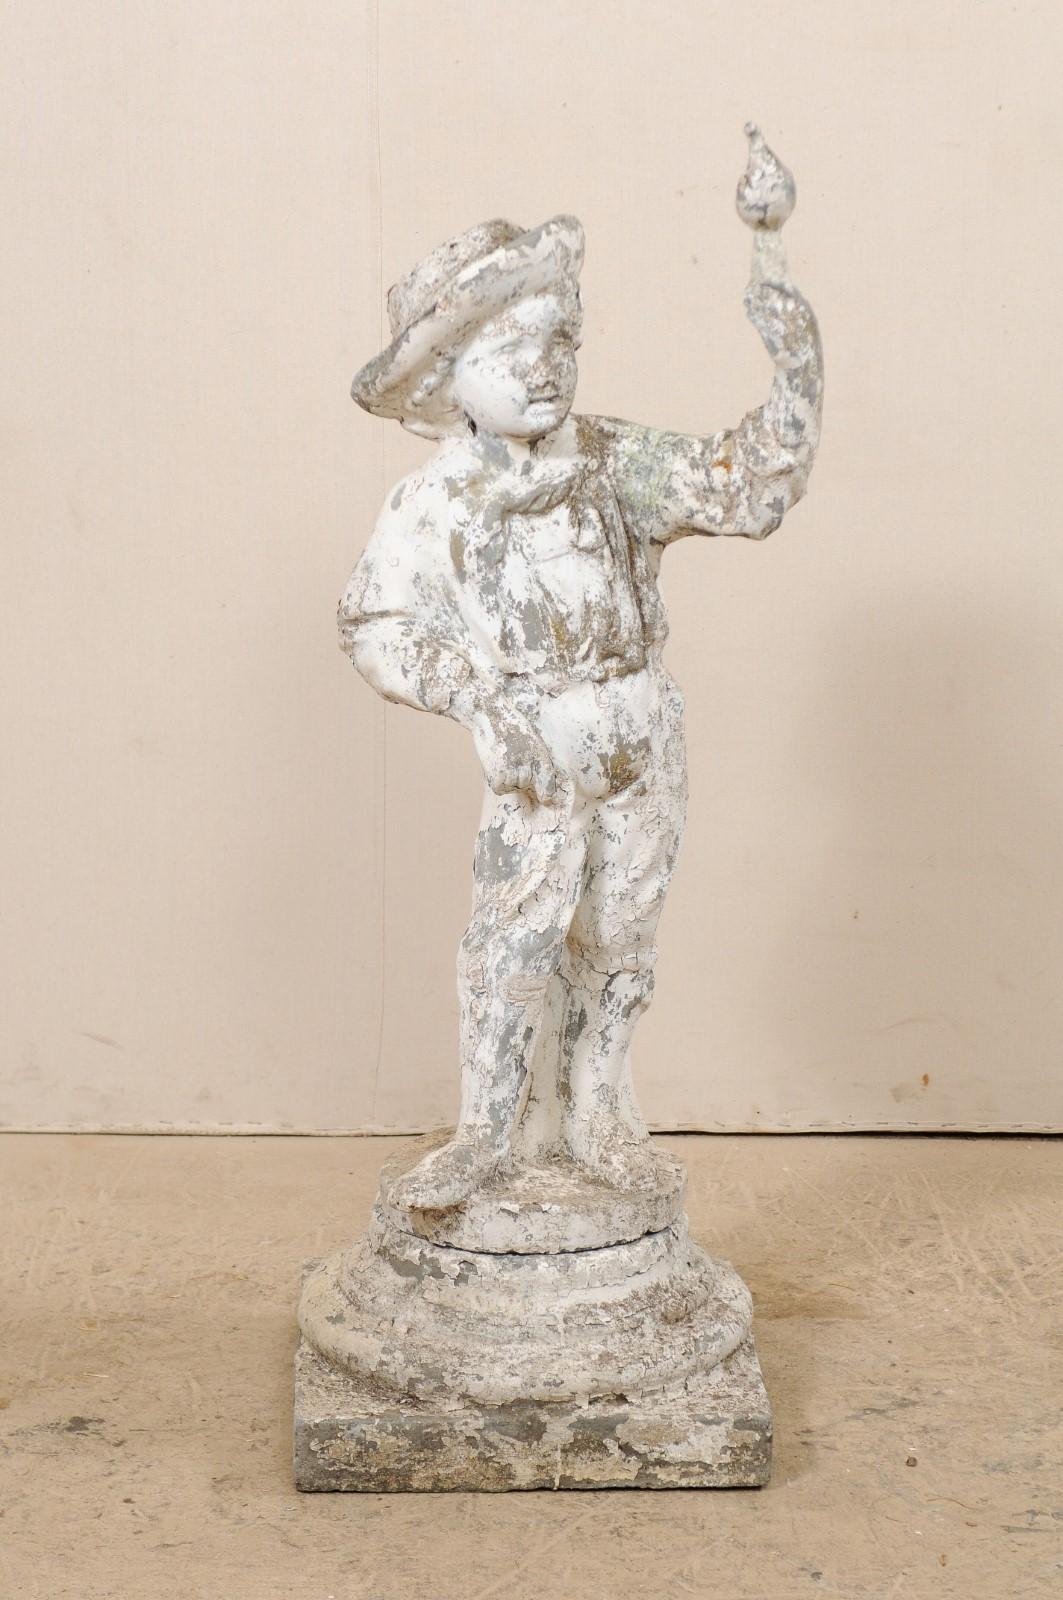 Sculpture de jardin en pierre moulée représentant un garçon avec un oiseau, datant du début du 20e siècle. Cette statue ancienne de France, en pierre moulée, représente un jeune garçon, debout contre un petit tronc d'arbre, la main levée et l'oiseau